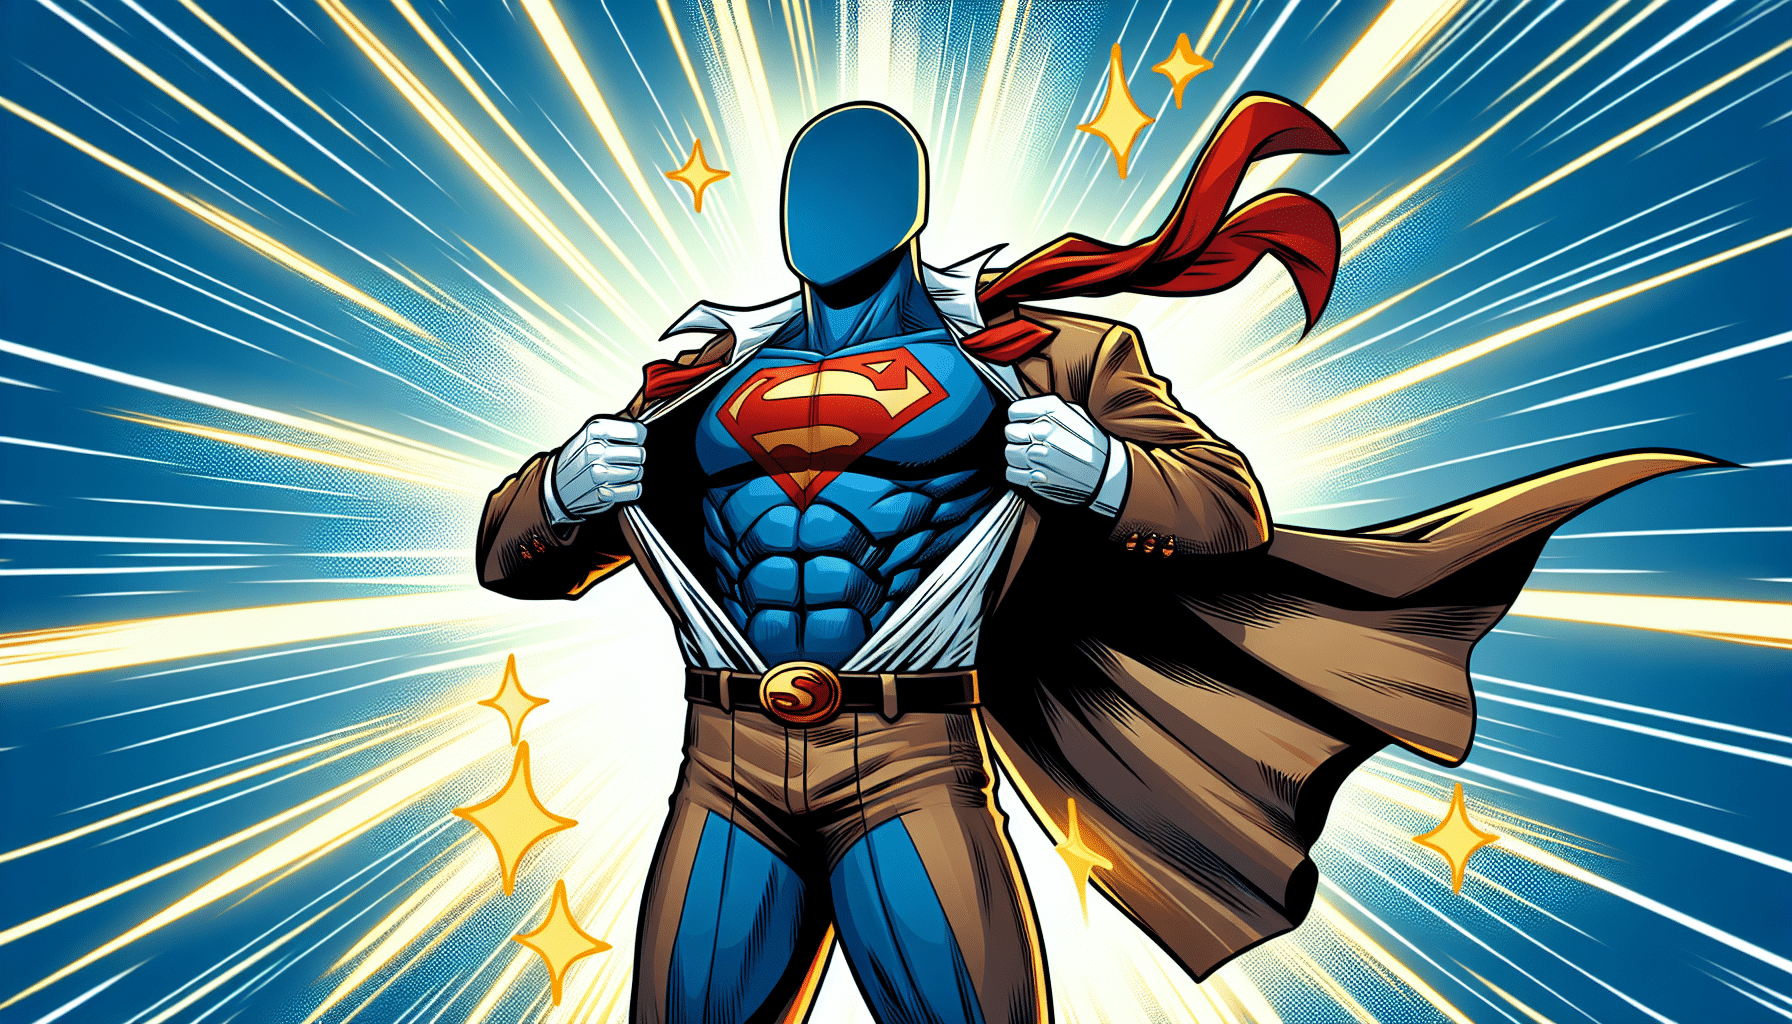 découvrez le successeur d'henry cavill dans le rôle de superman et son costume spectaculaire ! ne manquez pas cette révélation captivante !